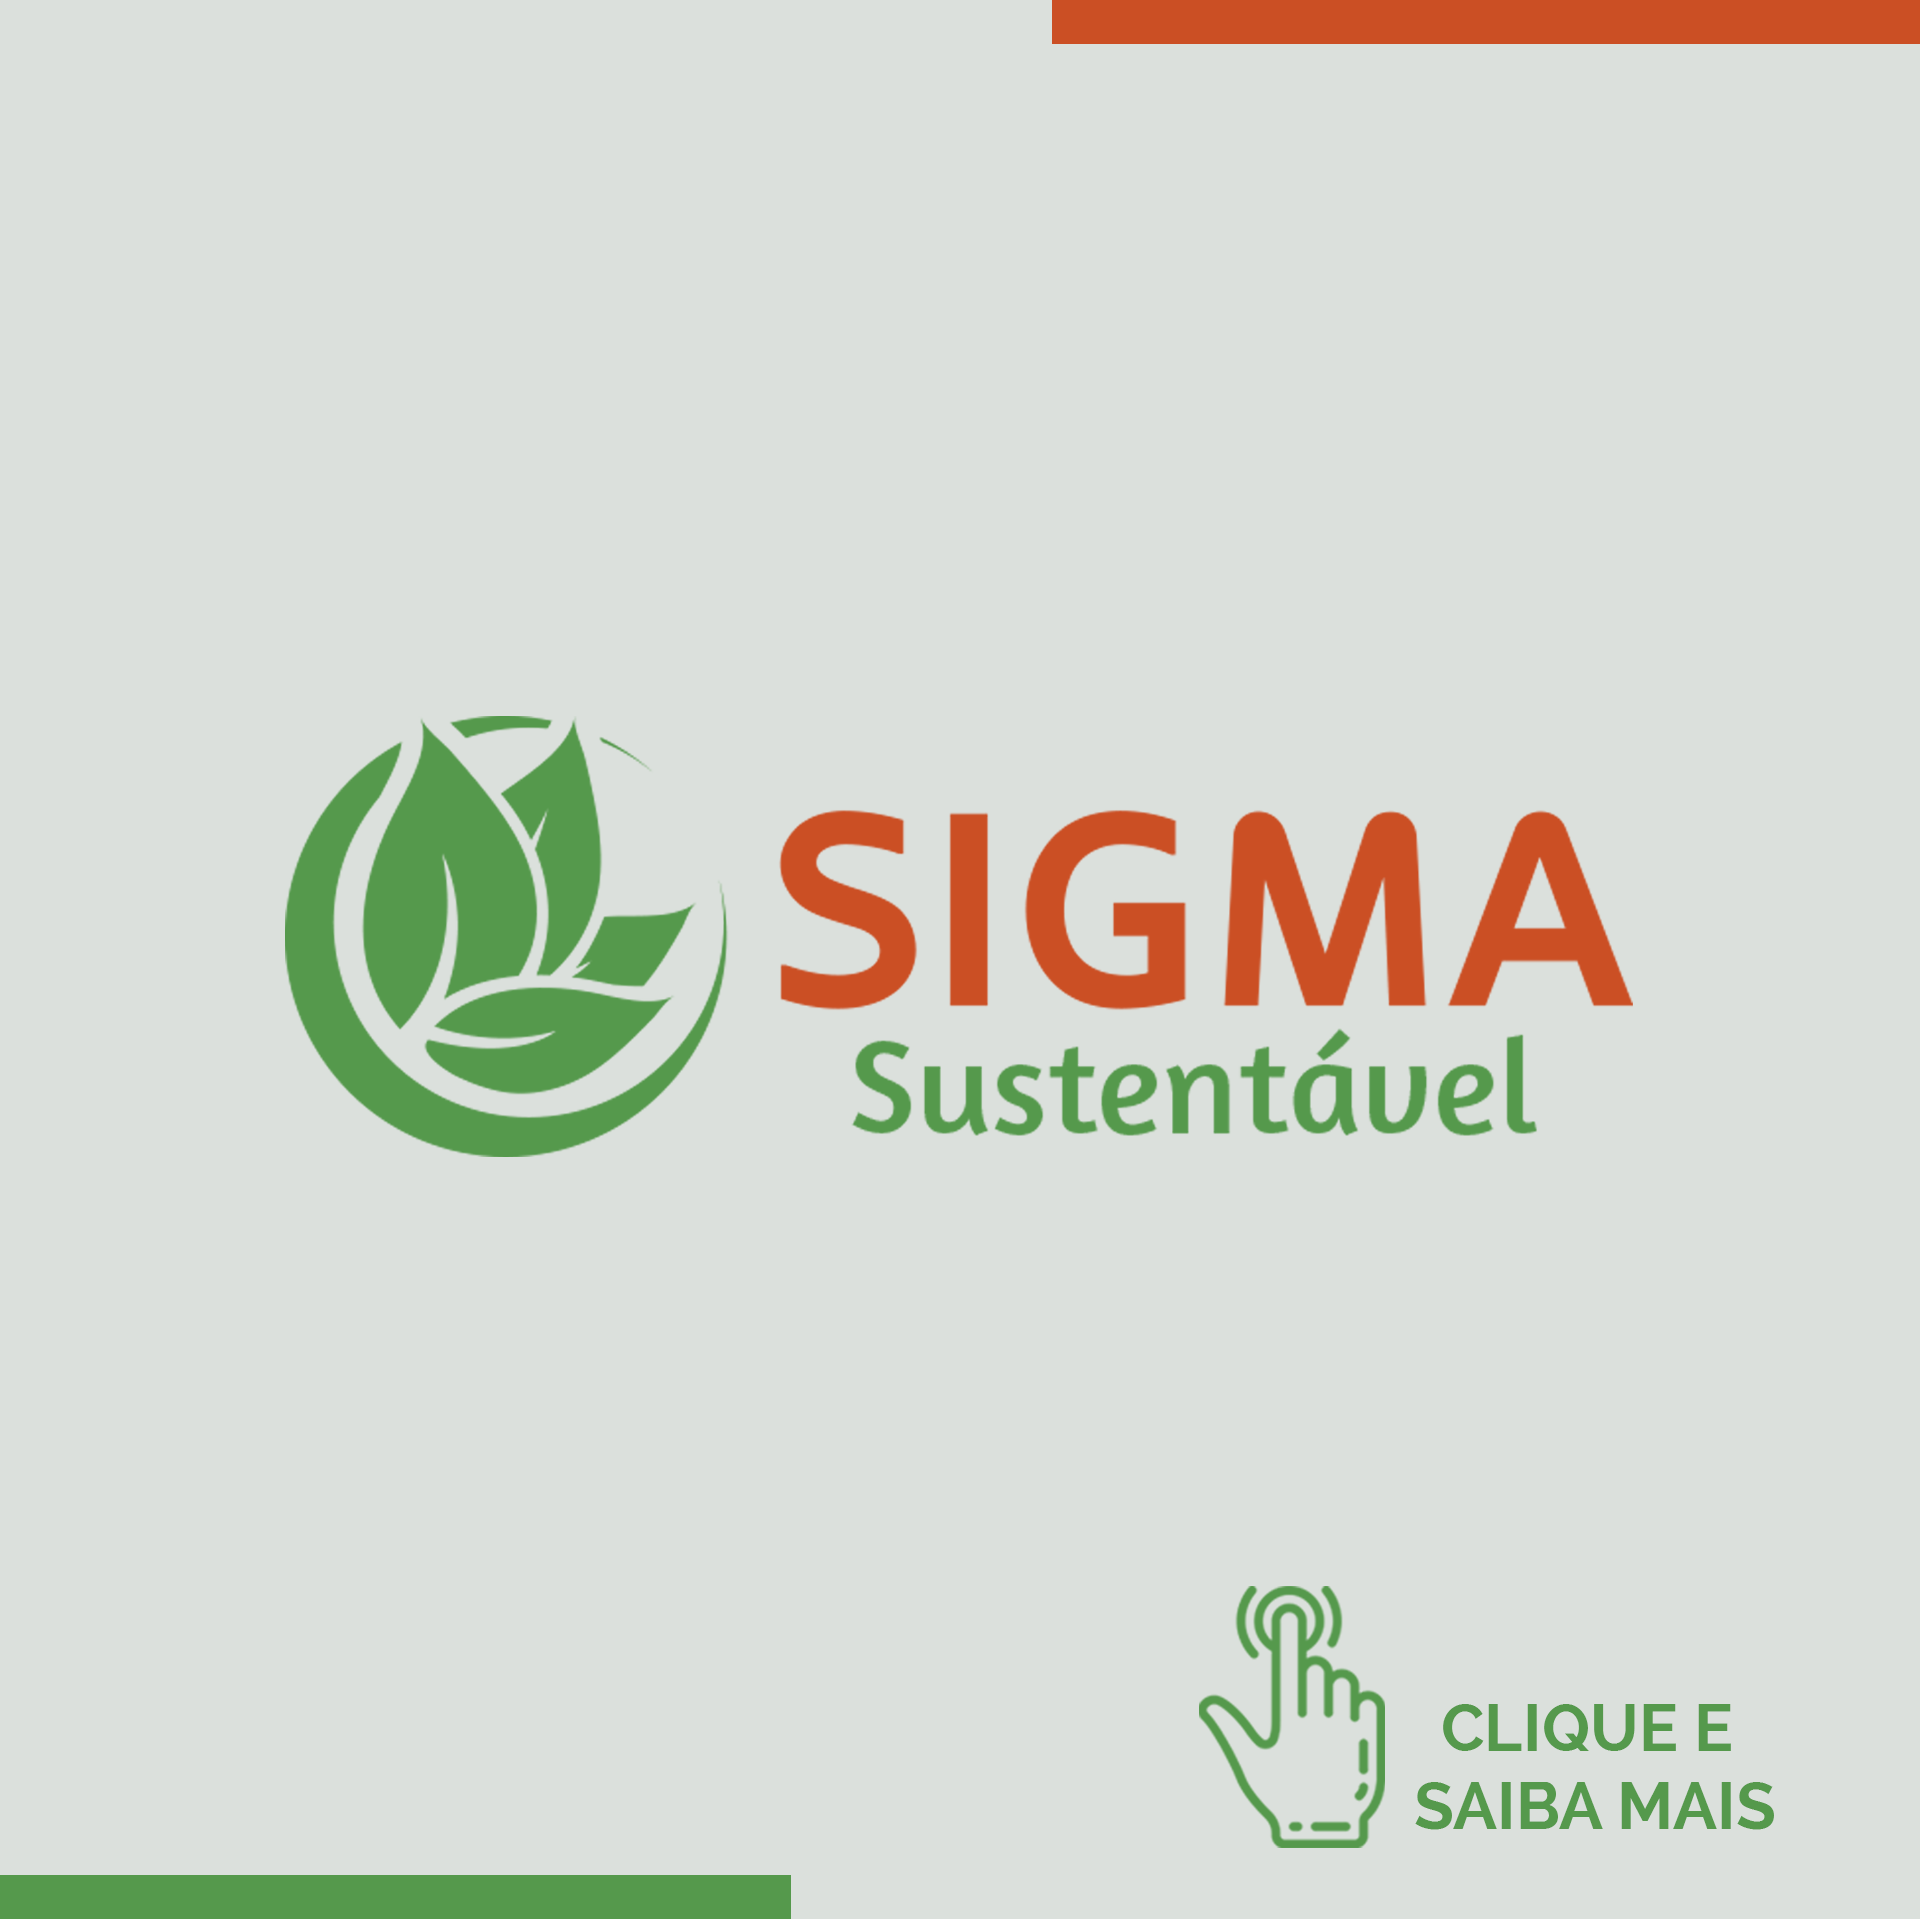 Sigma Sustentável